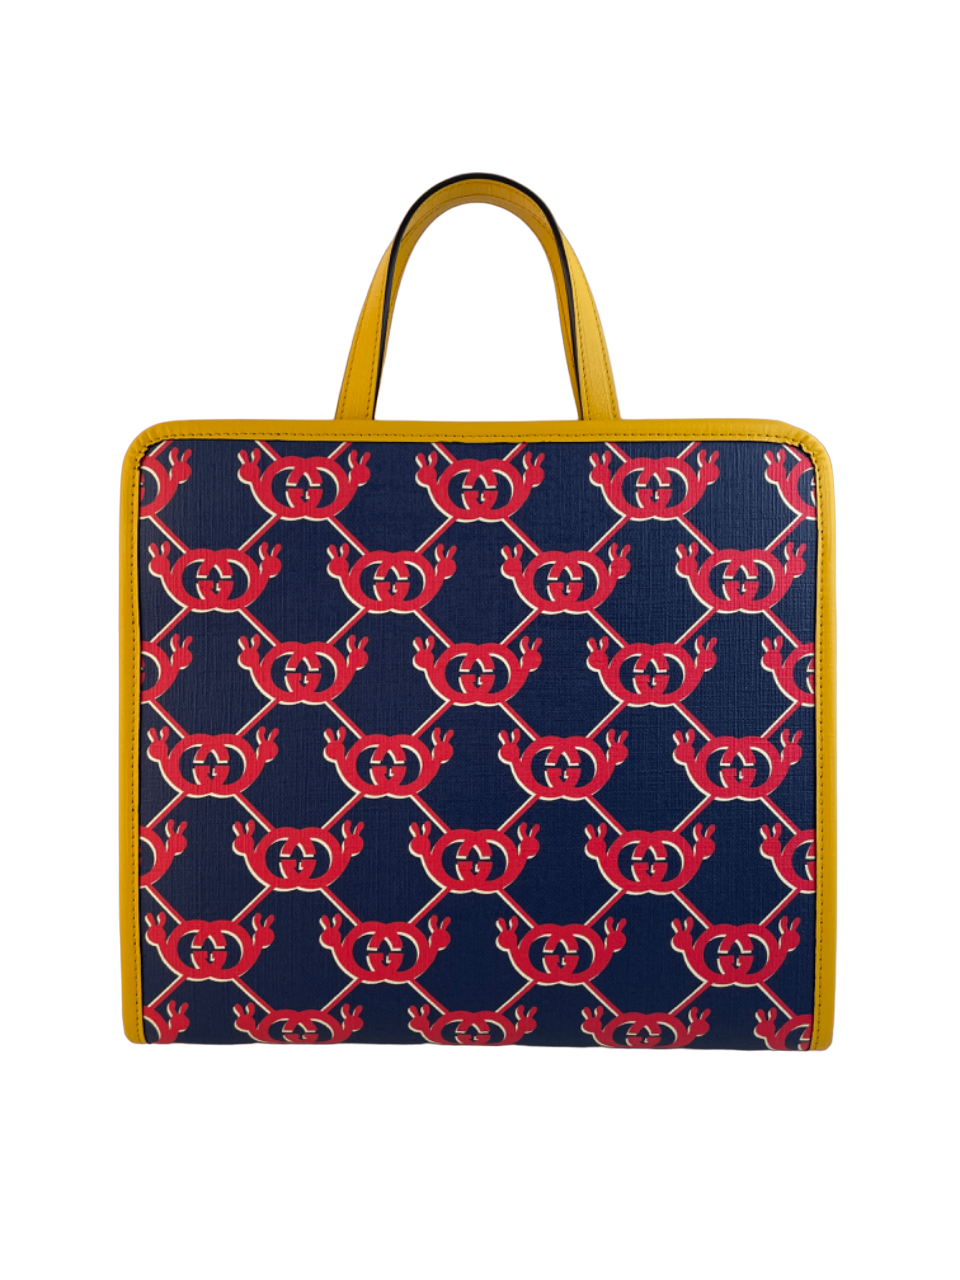 GG logo-print backpack, Gucci Kids